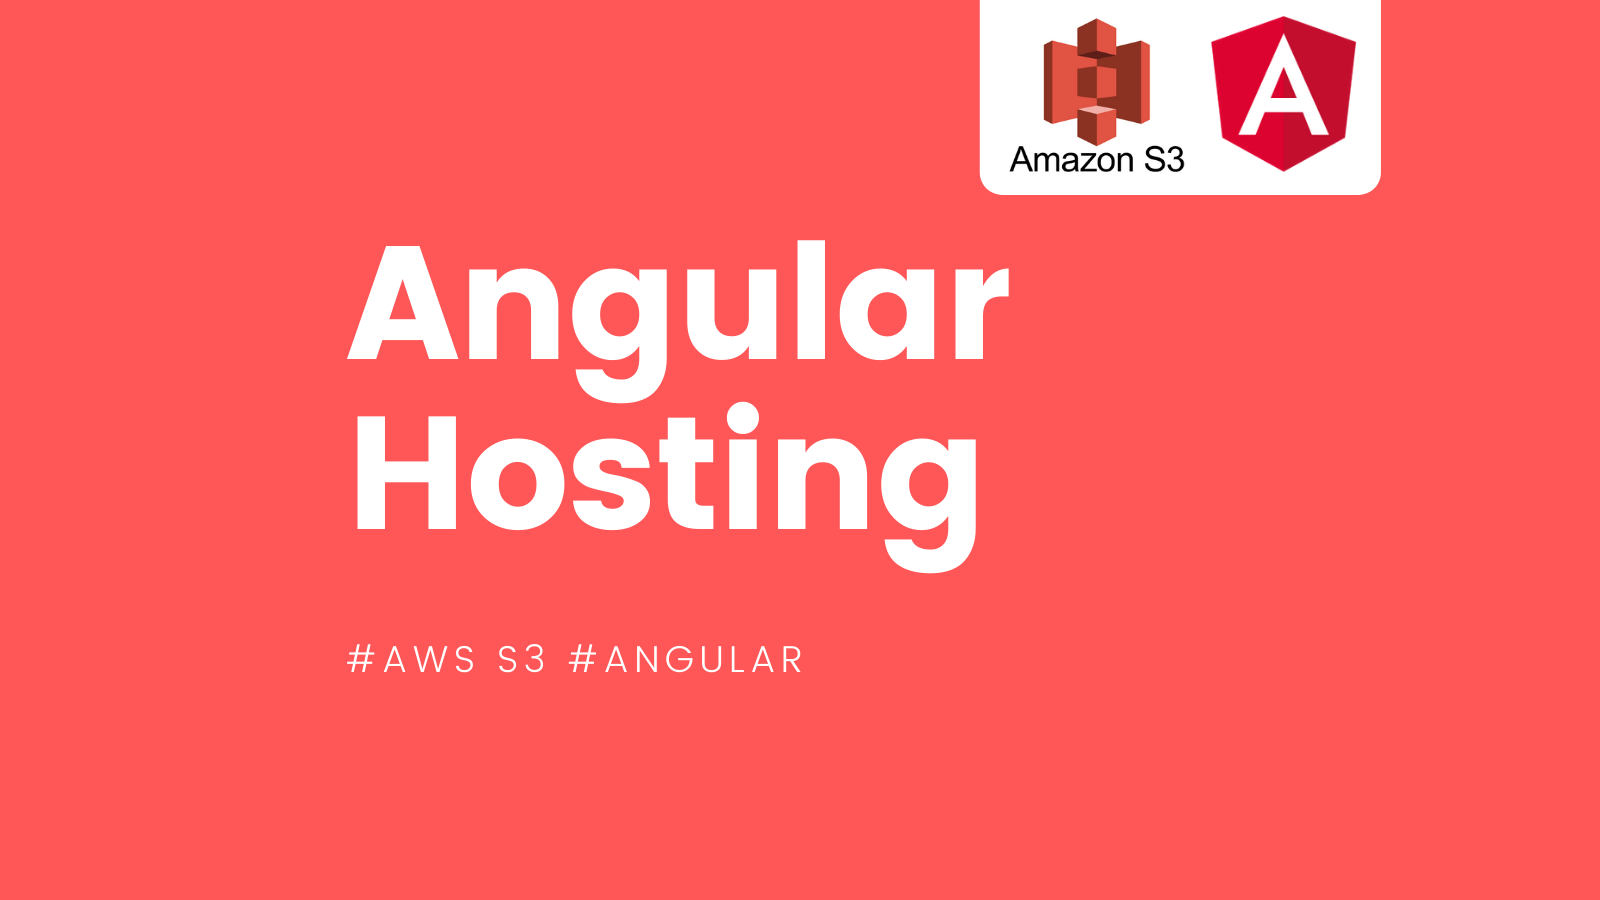 Hosting Your Angular Application on AWS S3